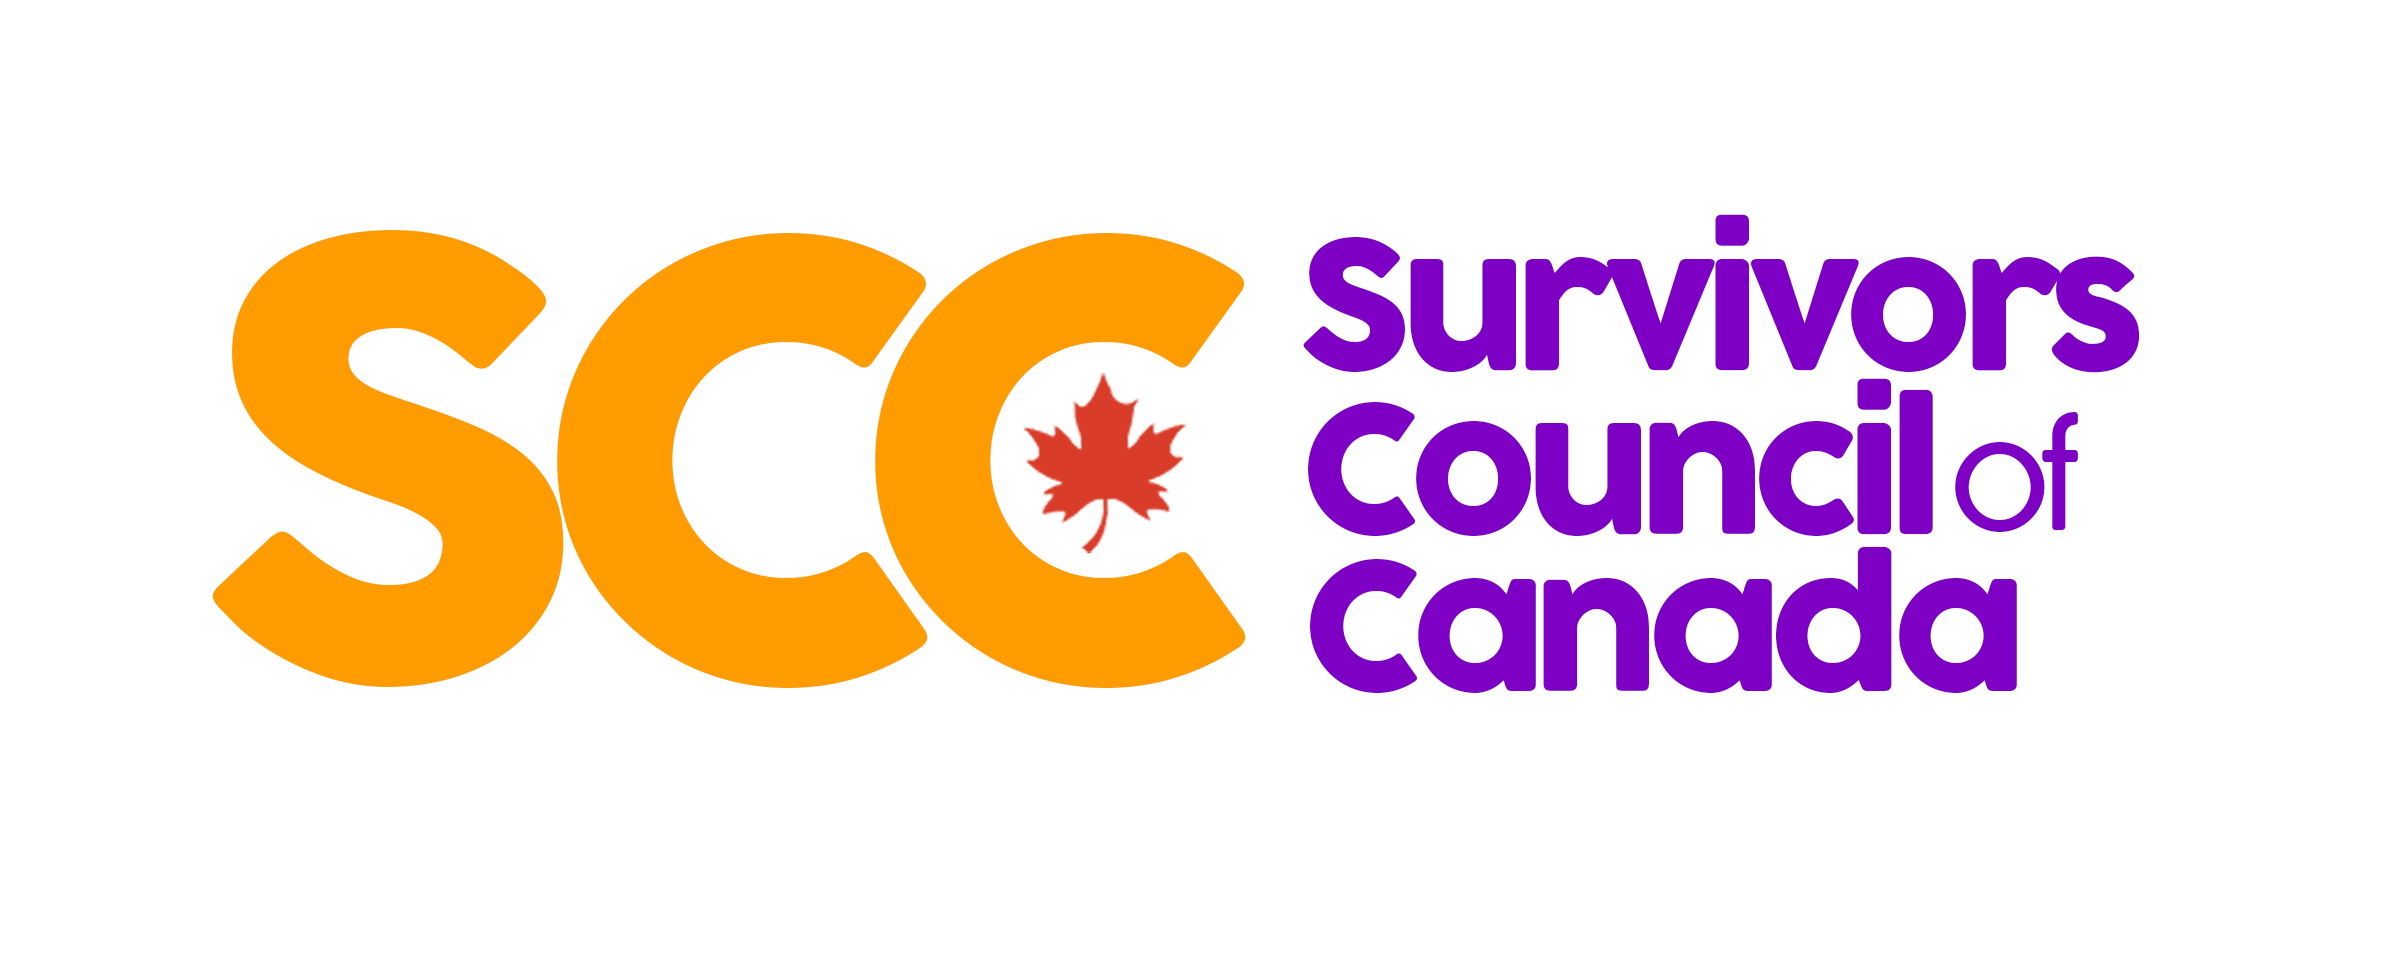 Survivors Council of Canada